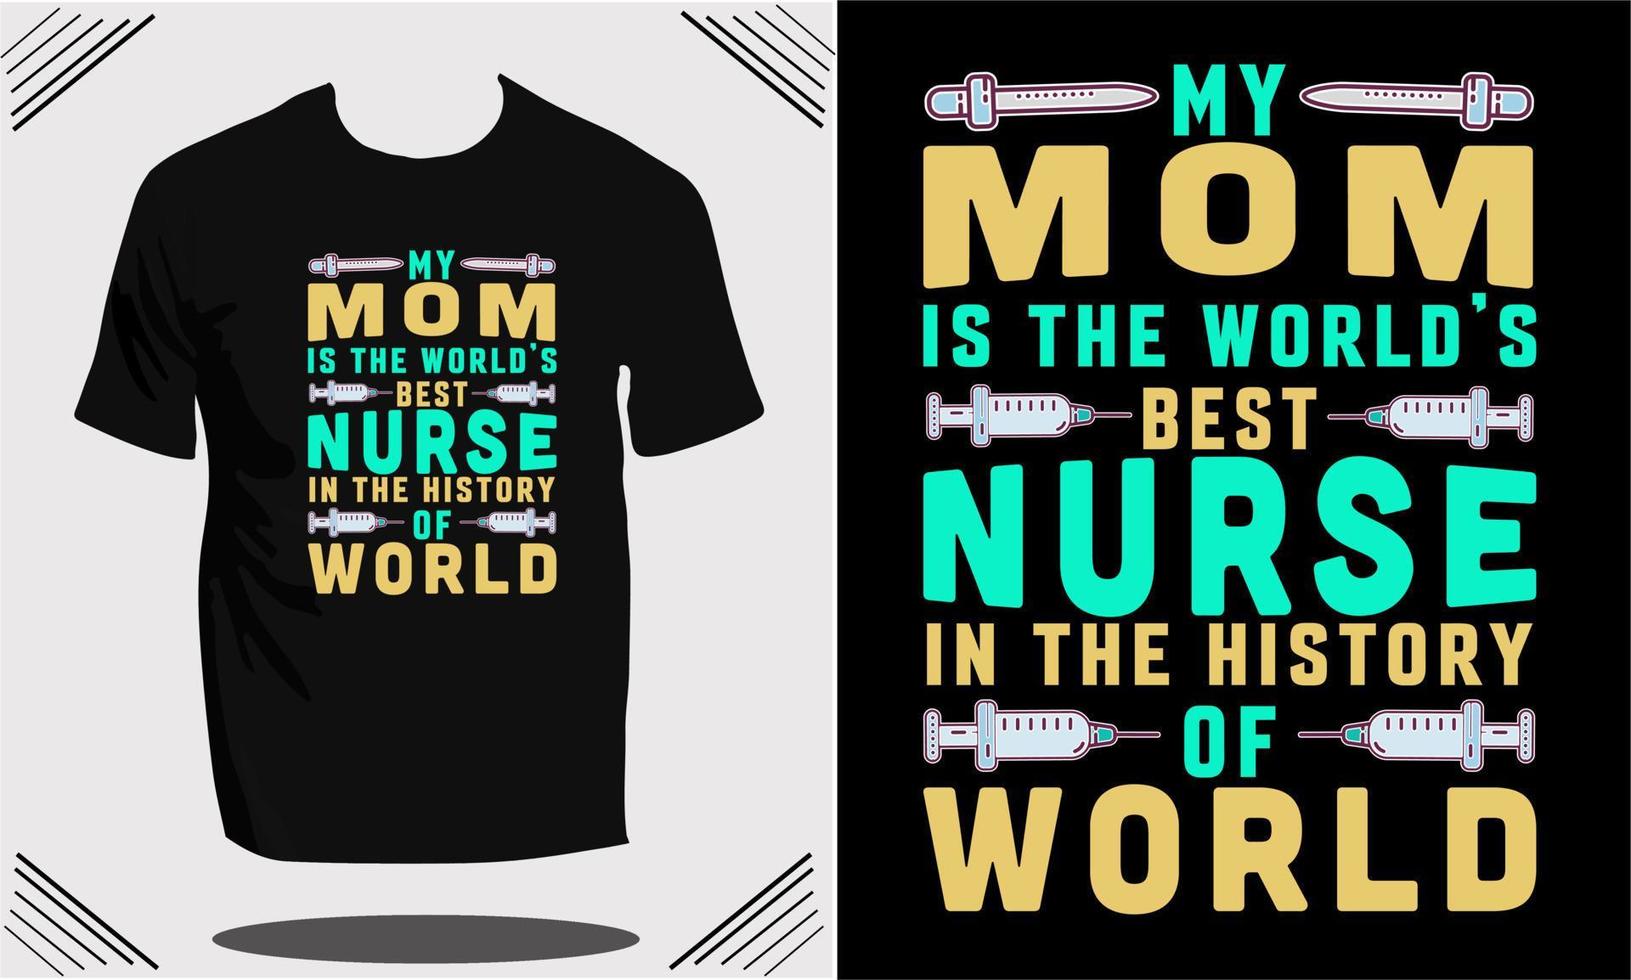 women nurse t shirt design or t shirt design template and vector